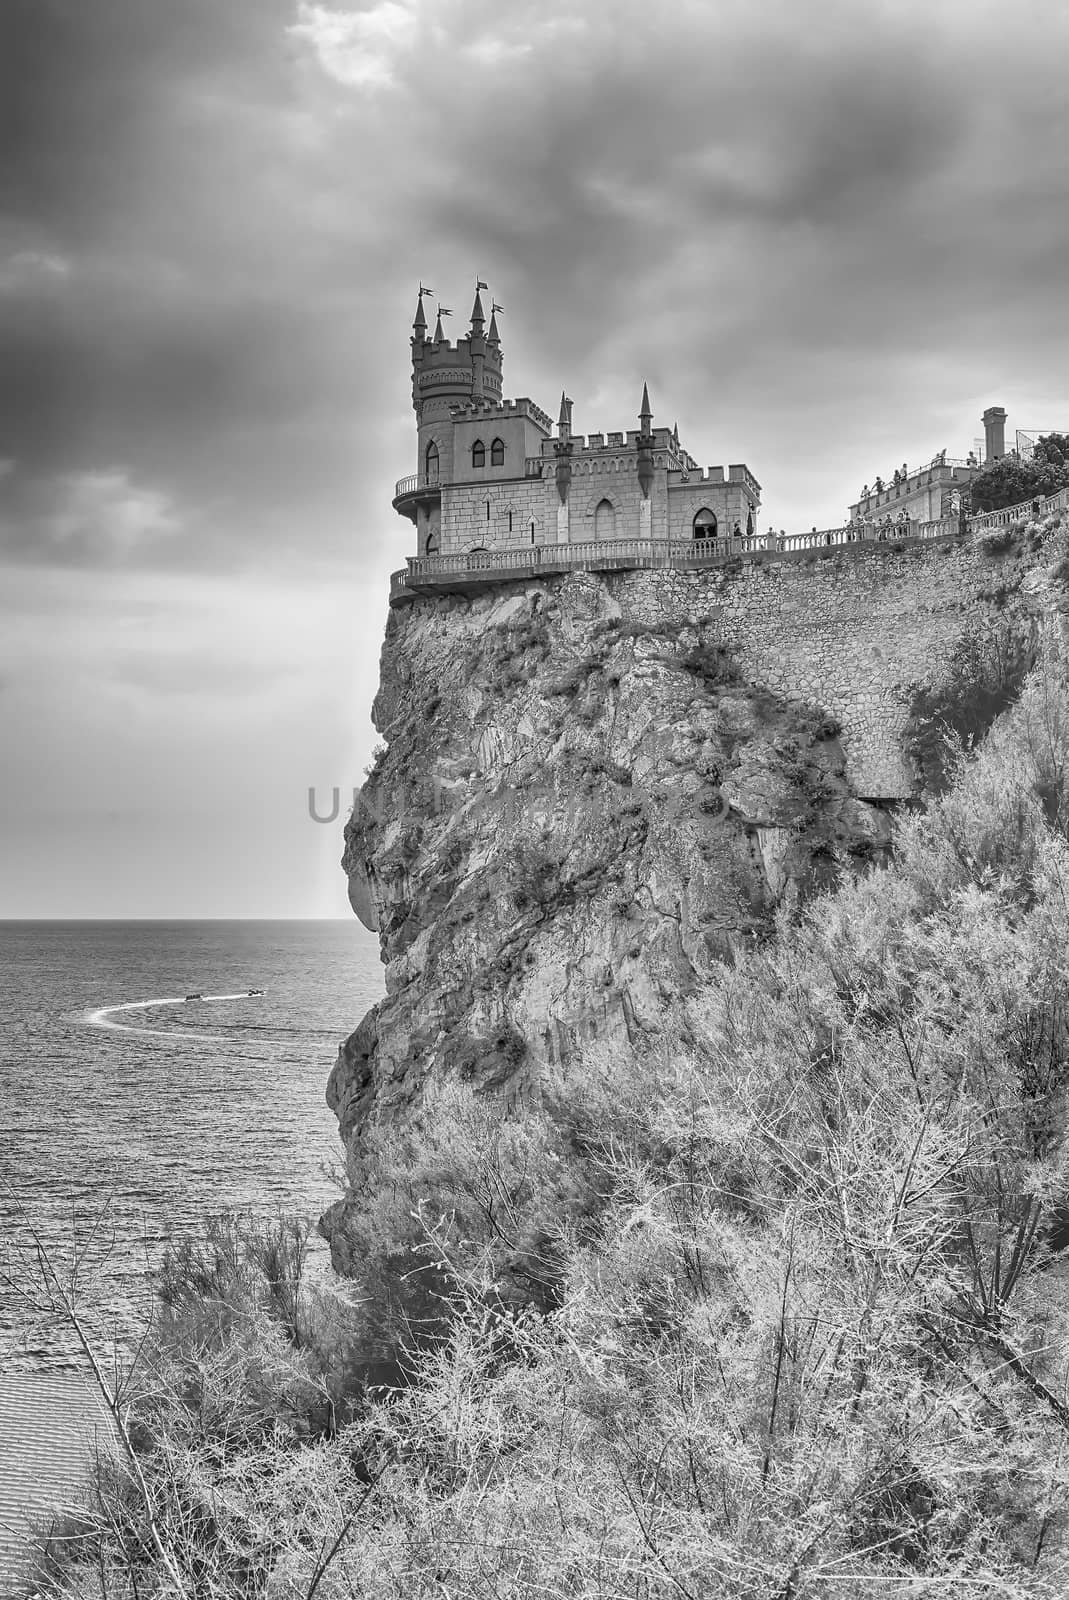 Swallow's nest, scenic castle over the Black Sea, Yalta, Crimea by marcorubino